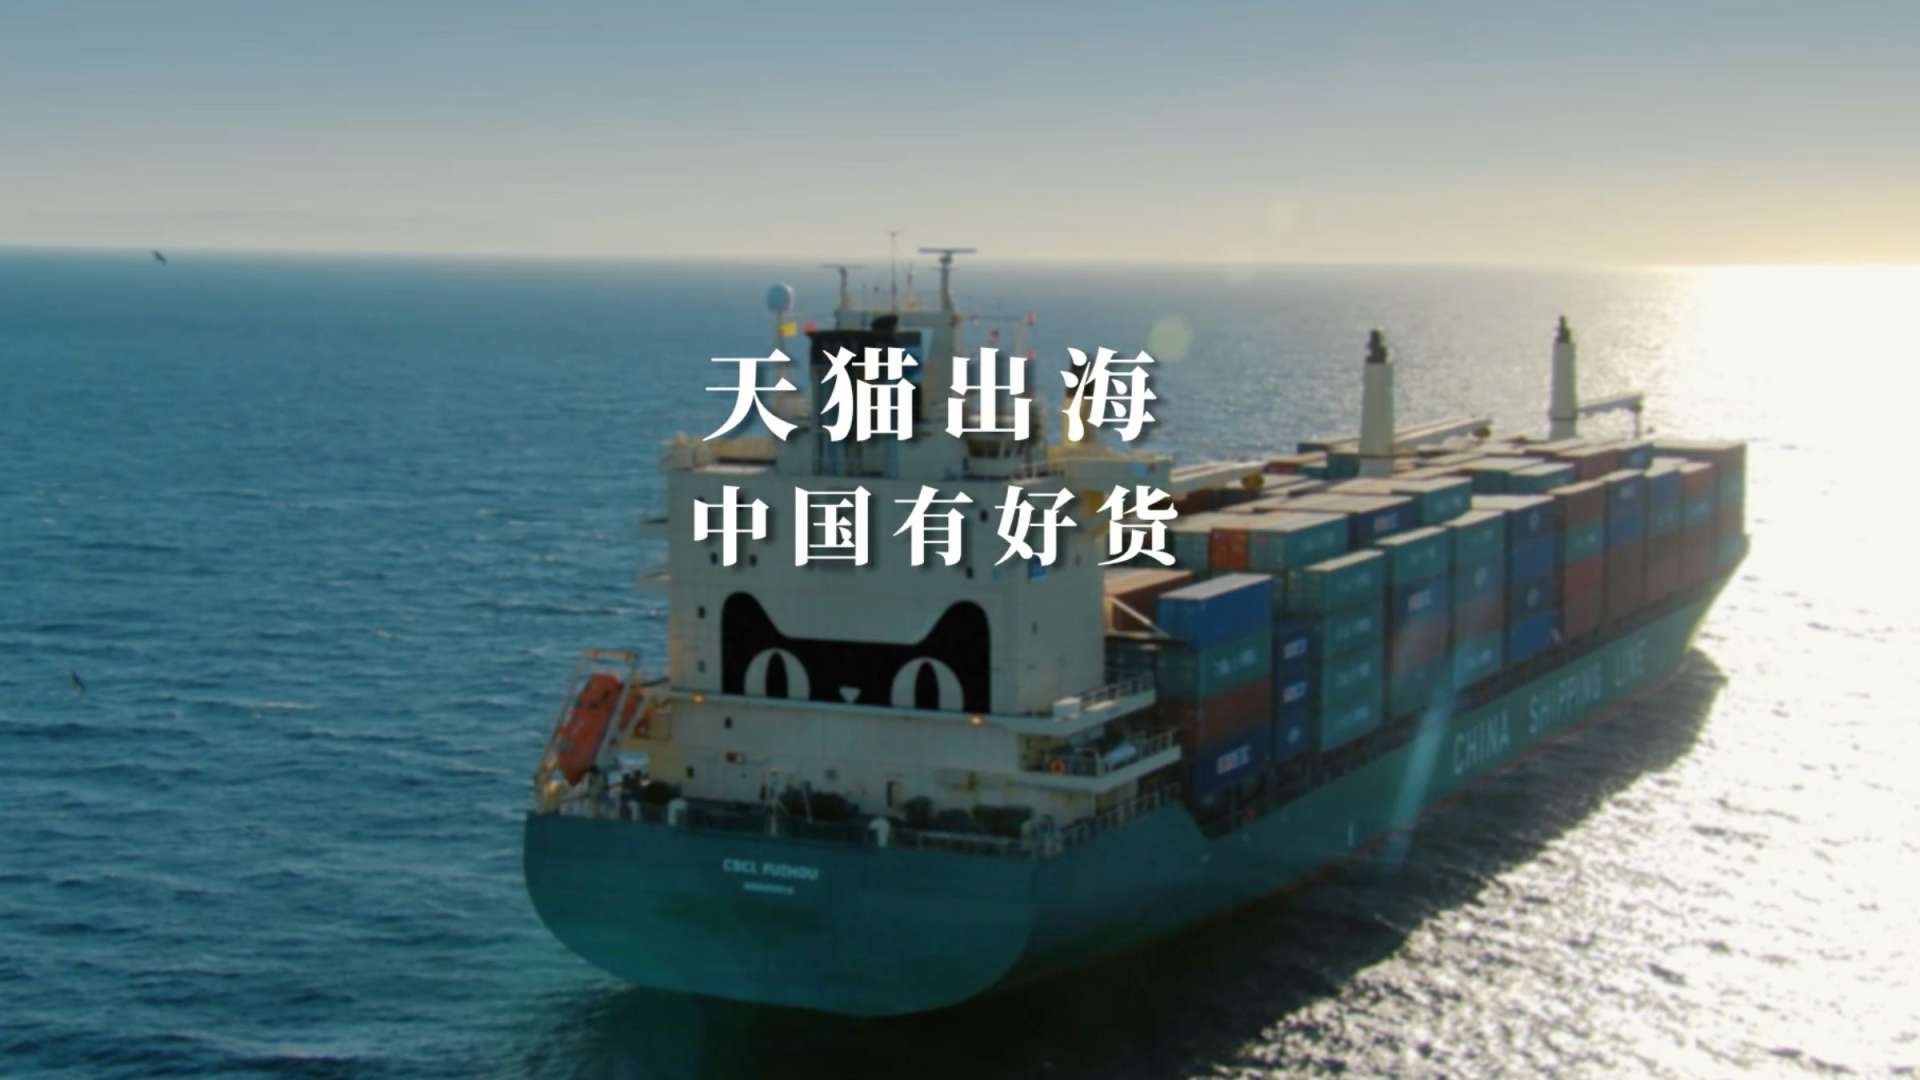 阿里巴巴-天猫出海成片